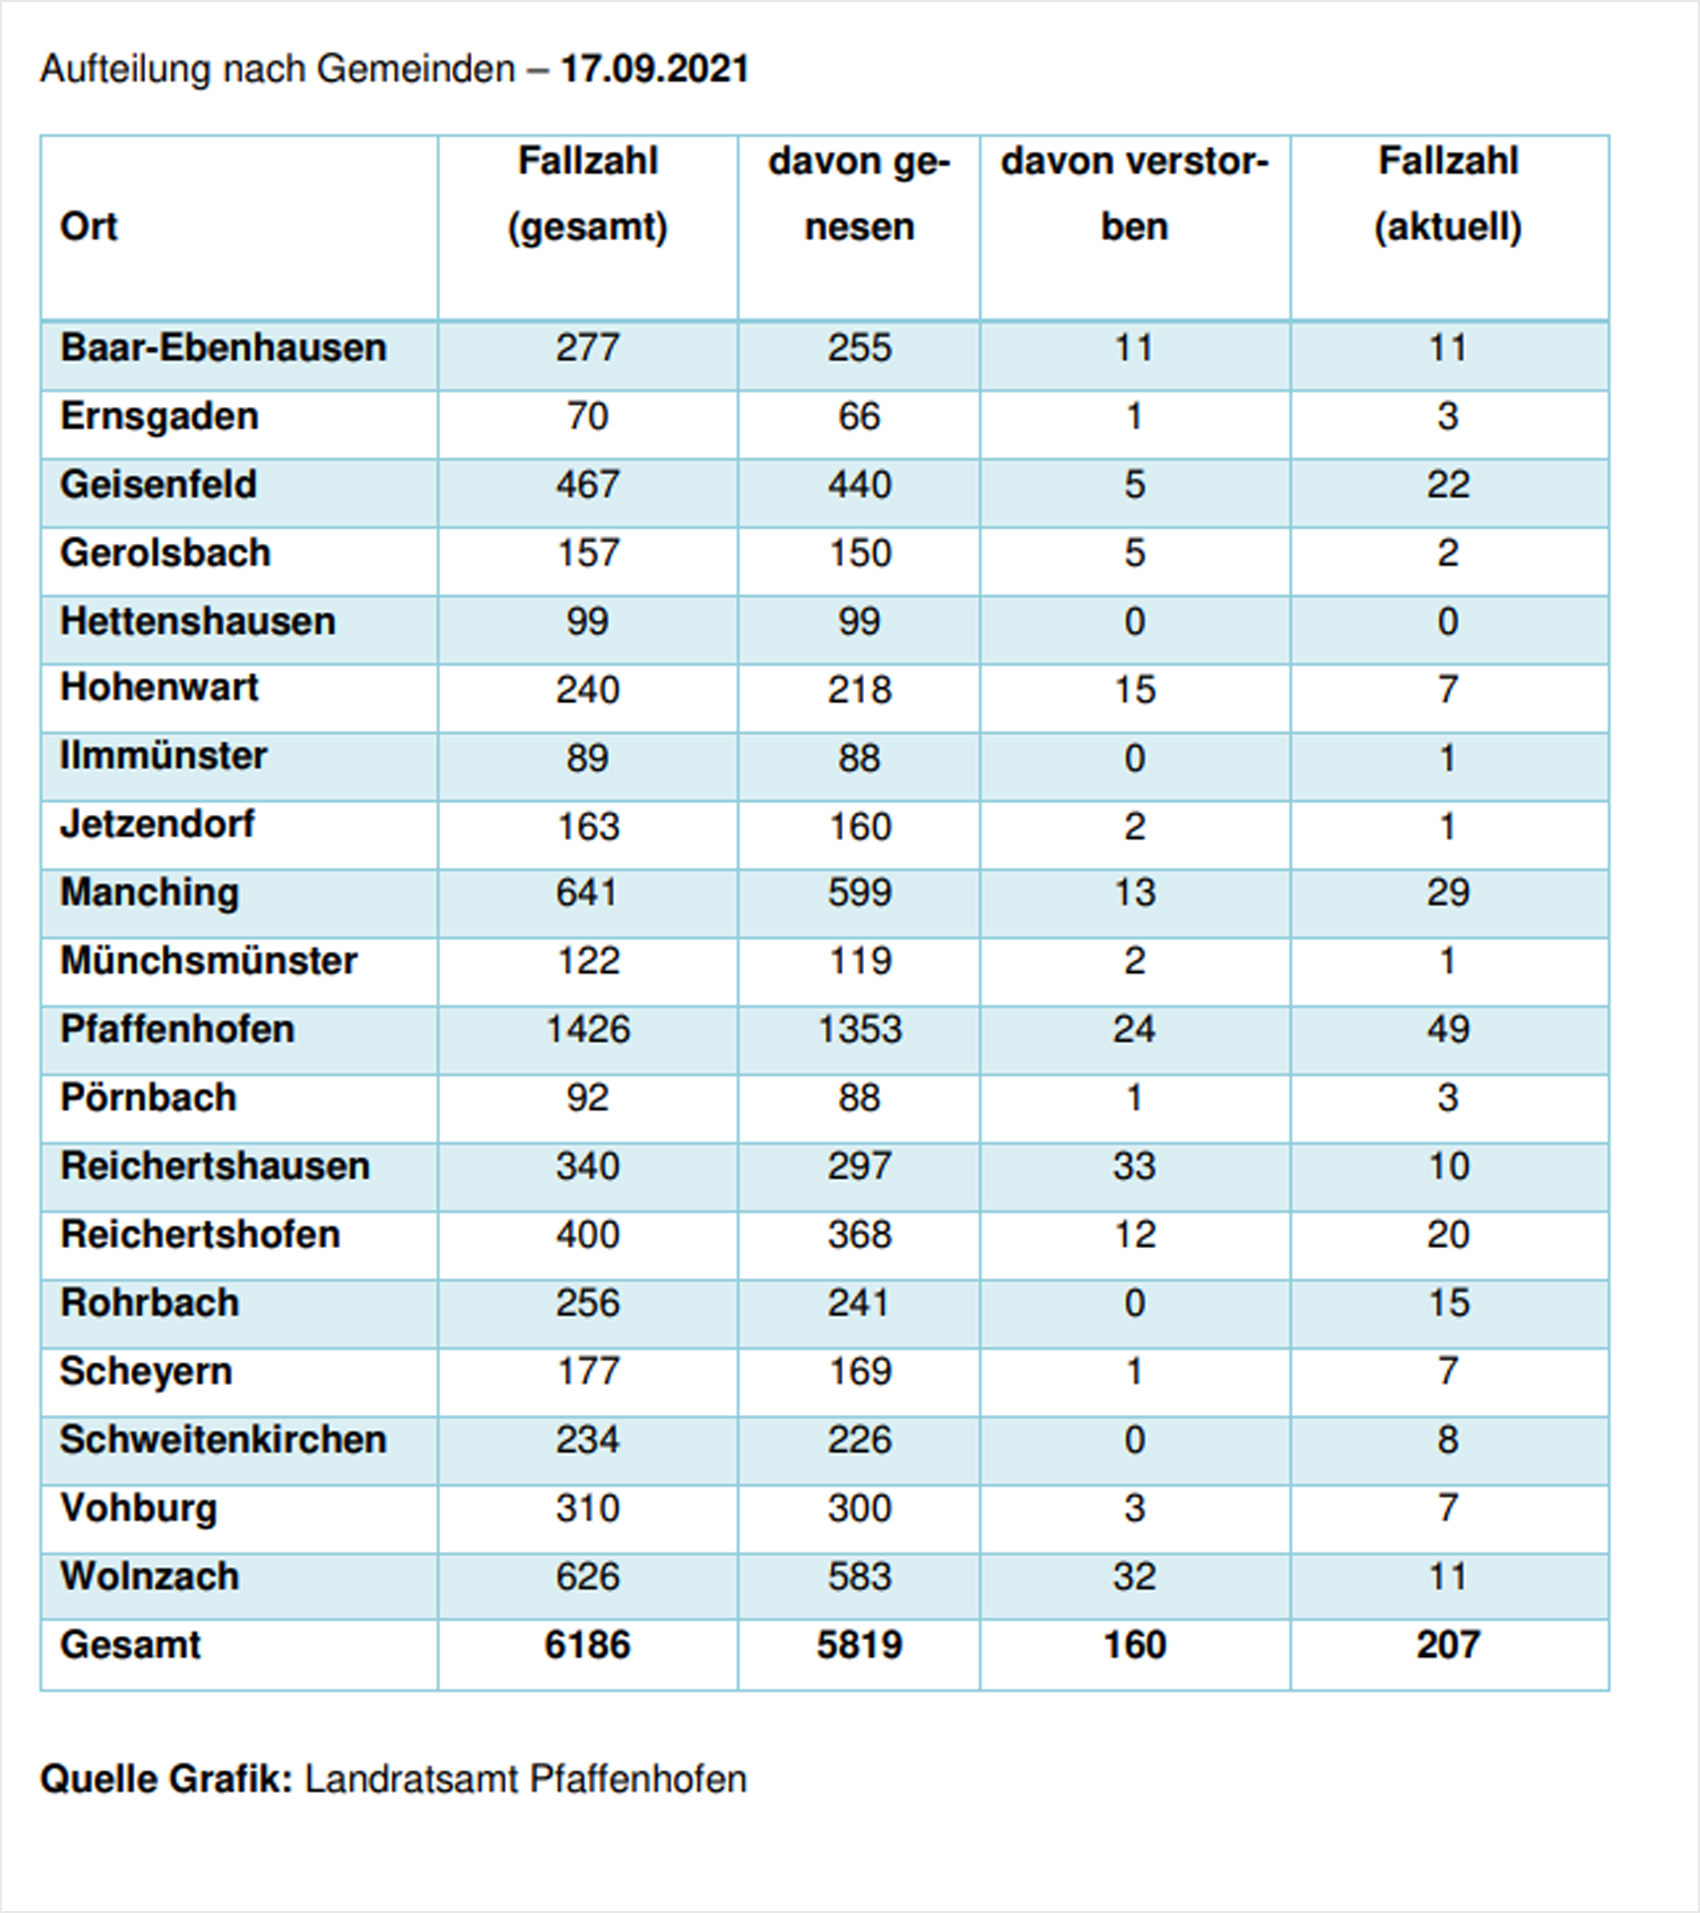 Verteilung der Fallzahlen auf die Landkreisgemeinden - 17.09.2021